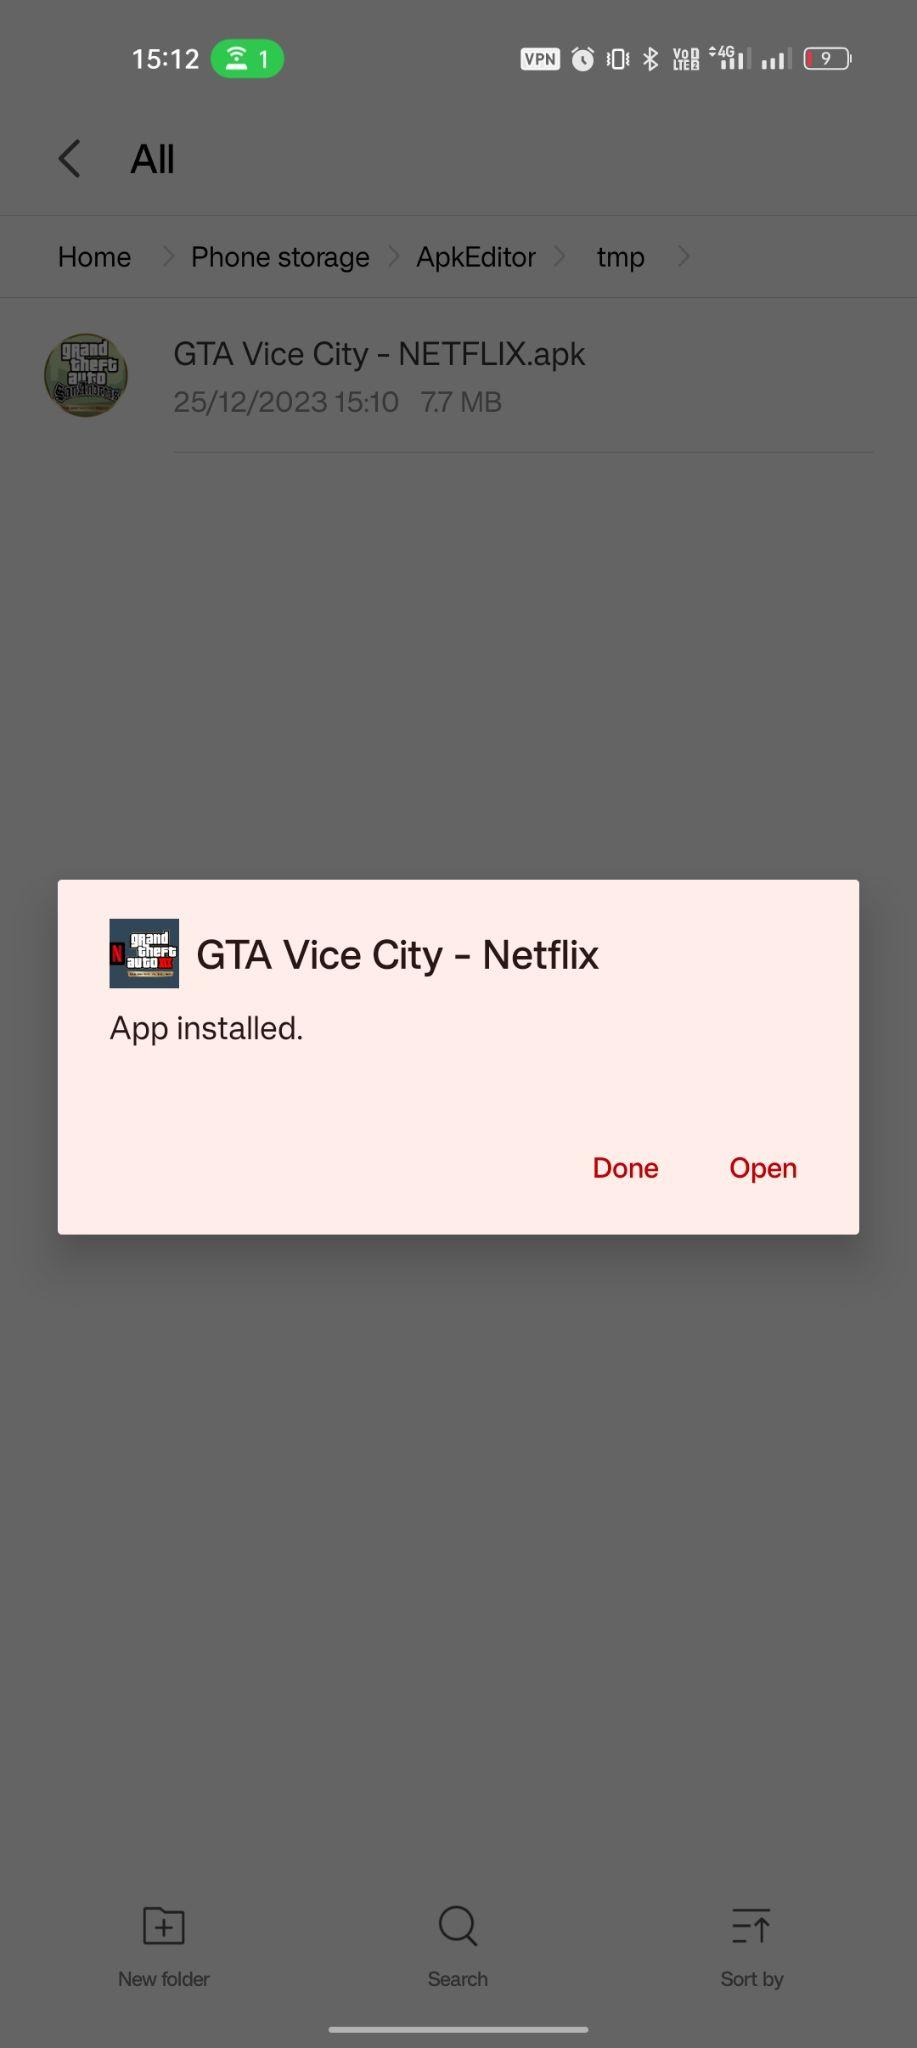 GTA: Vice City – Netflix apk installiert